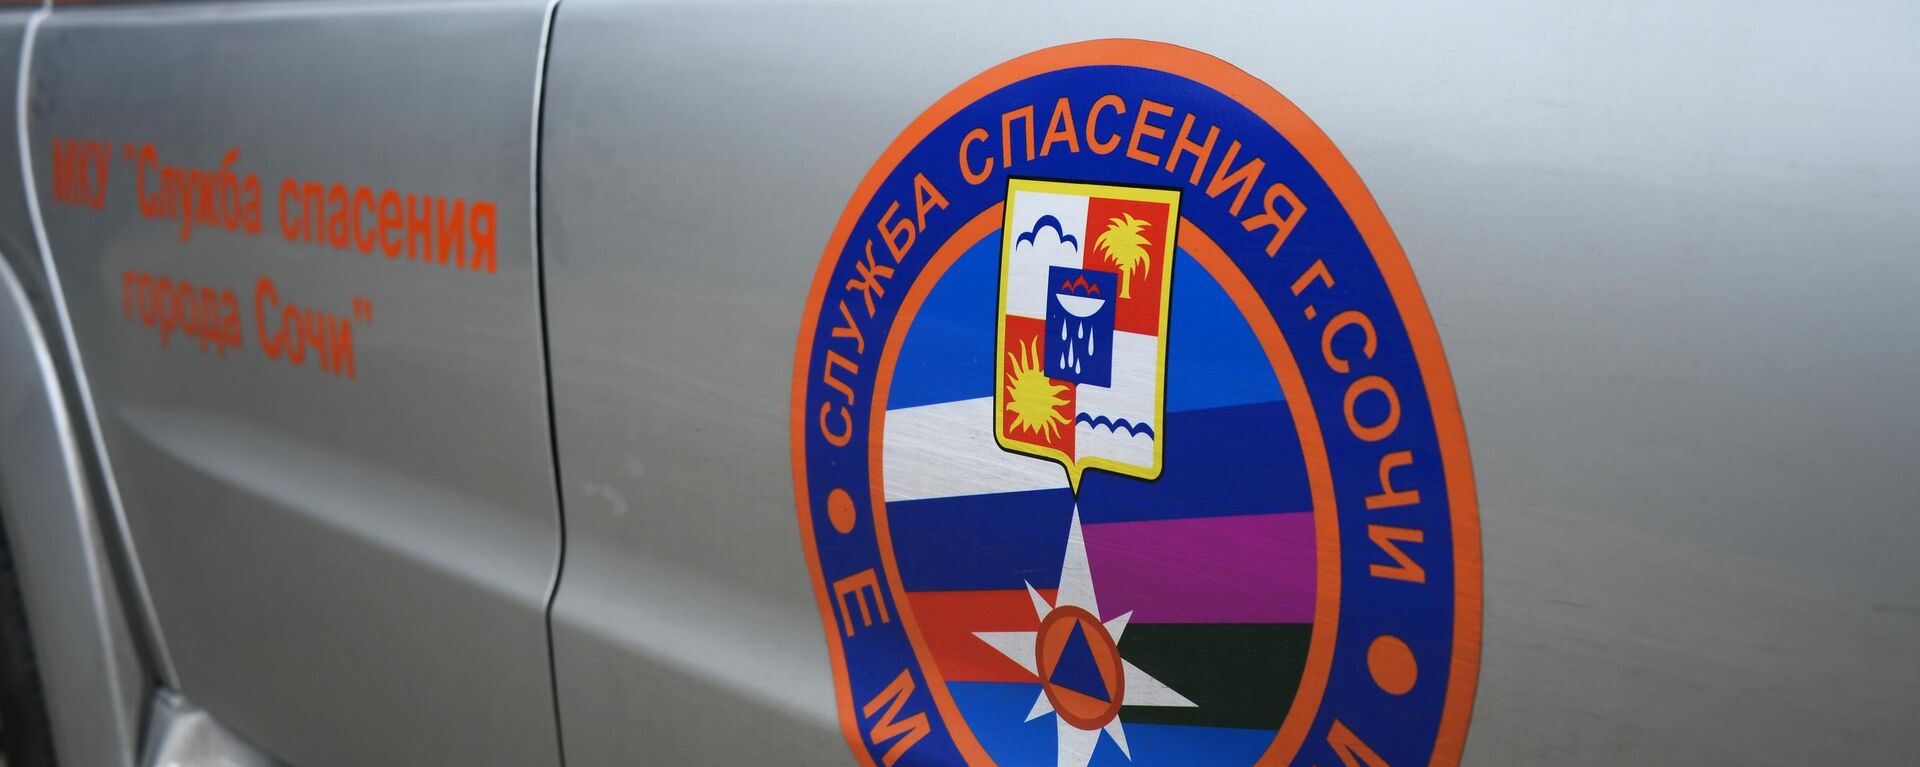 Логотип службы спасения города Сочи на служебном автомобиле. - Sputnik Абхазия, 1920, 29.11.2021